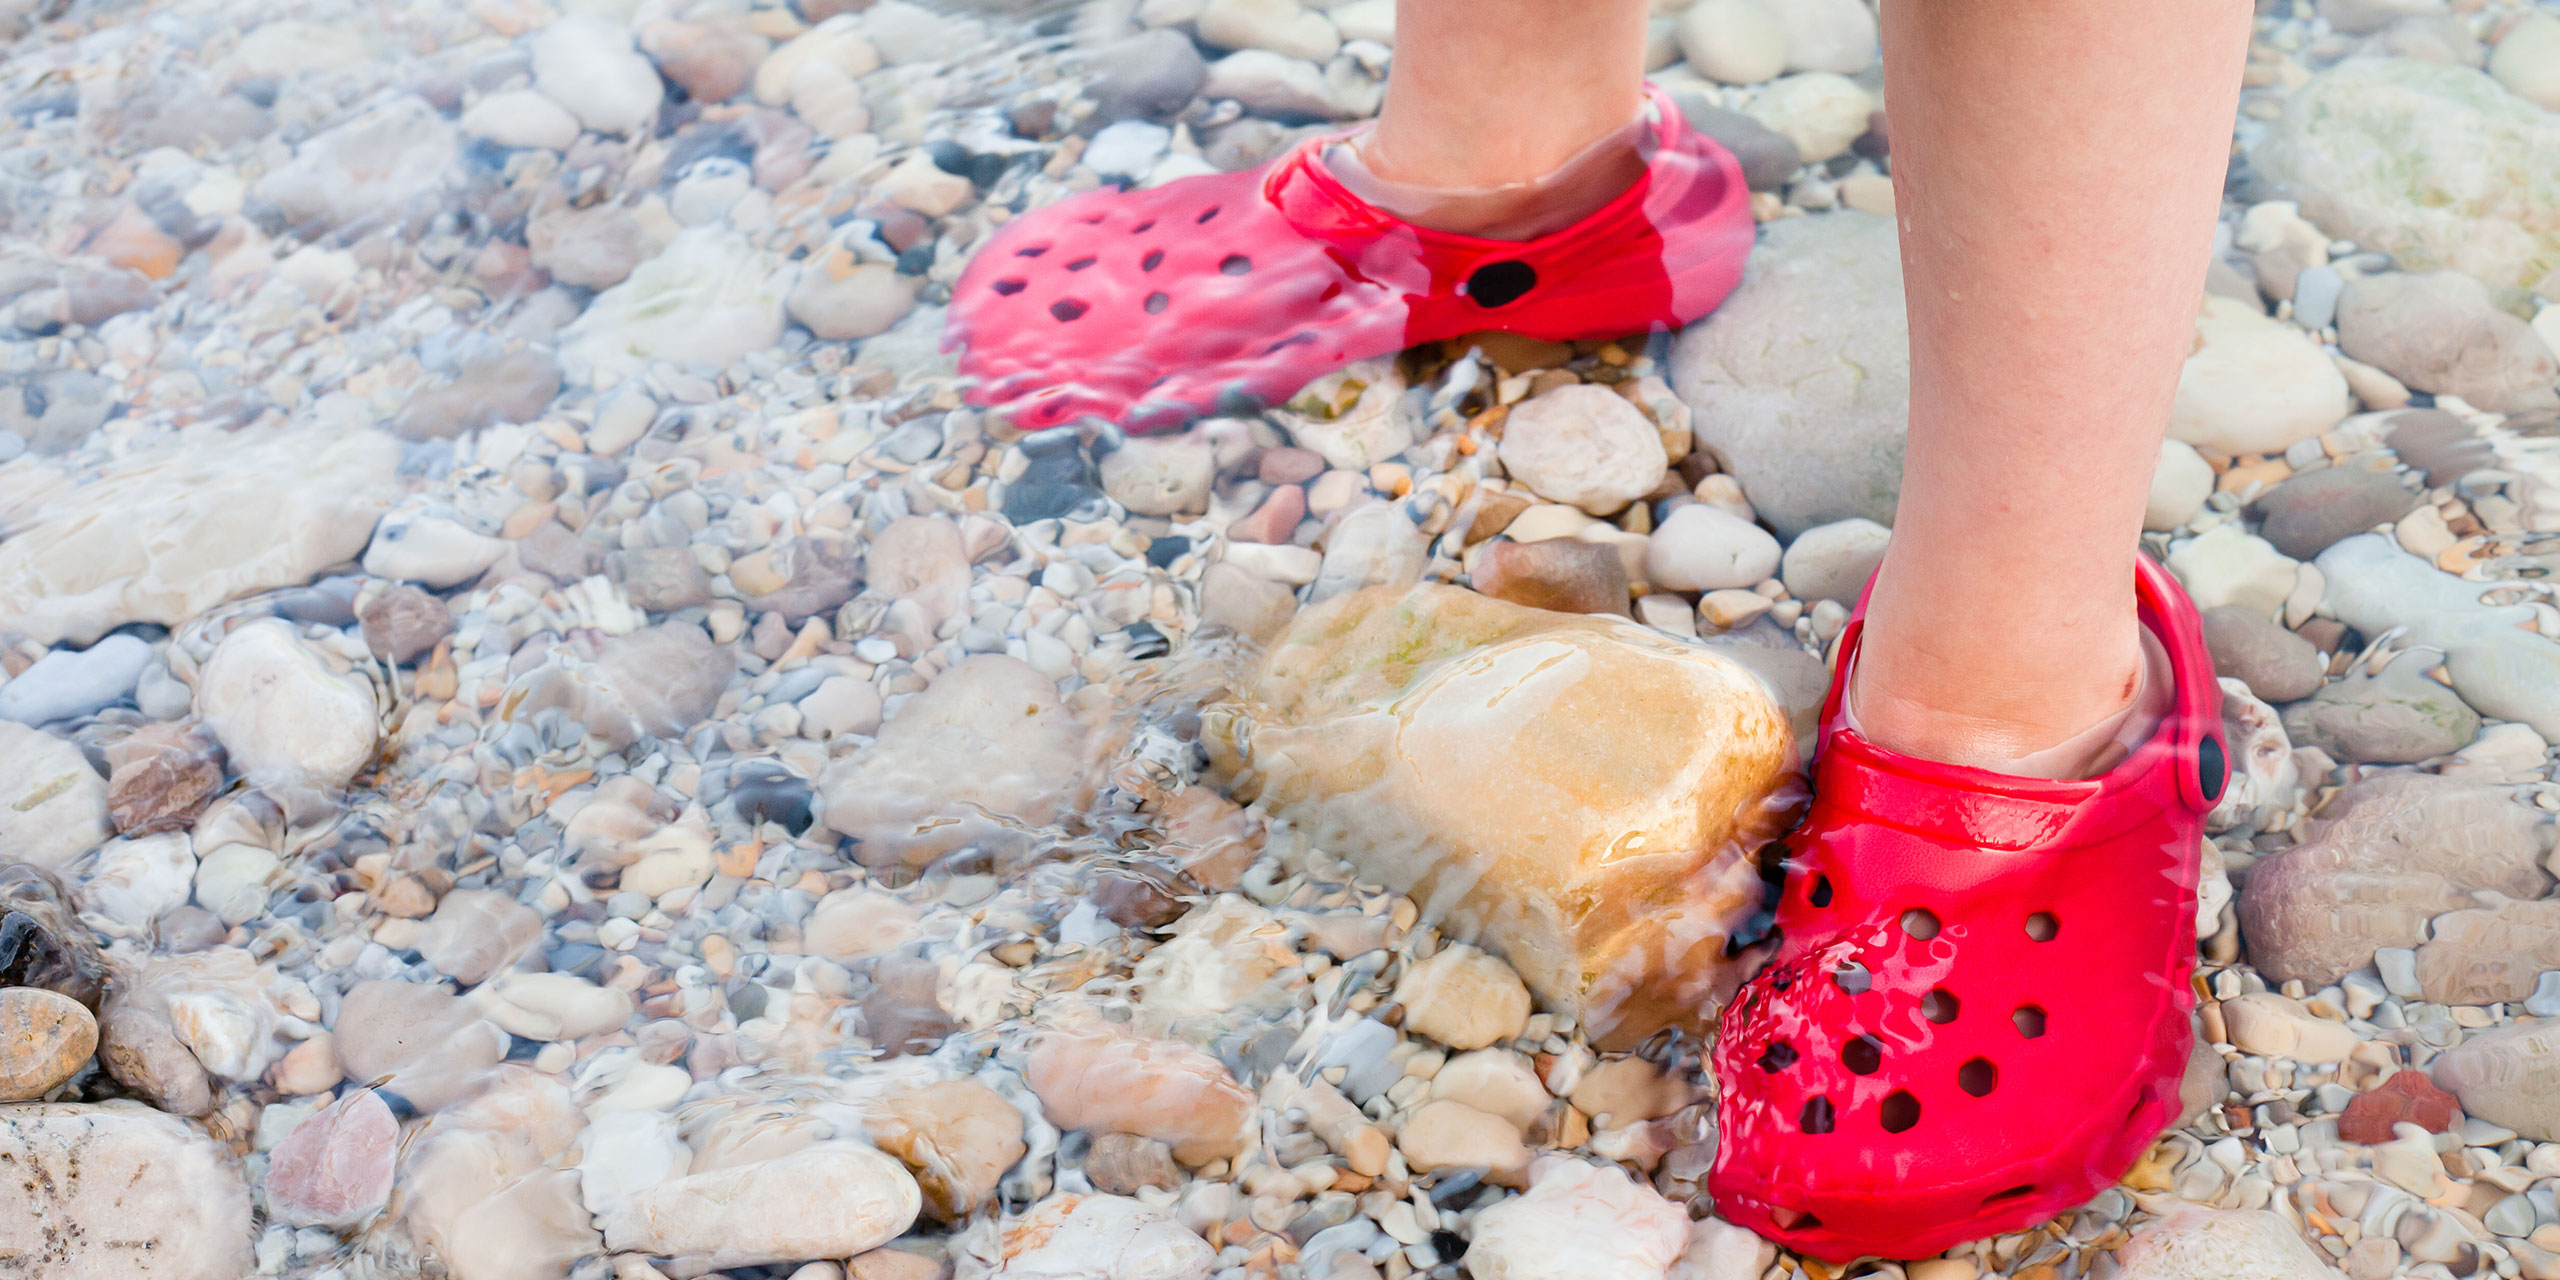 Kids Crocs in Water; Courtesy of Tom Gowanlock/Shutterstock.com